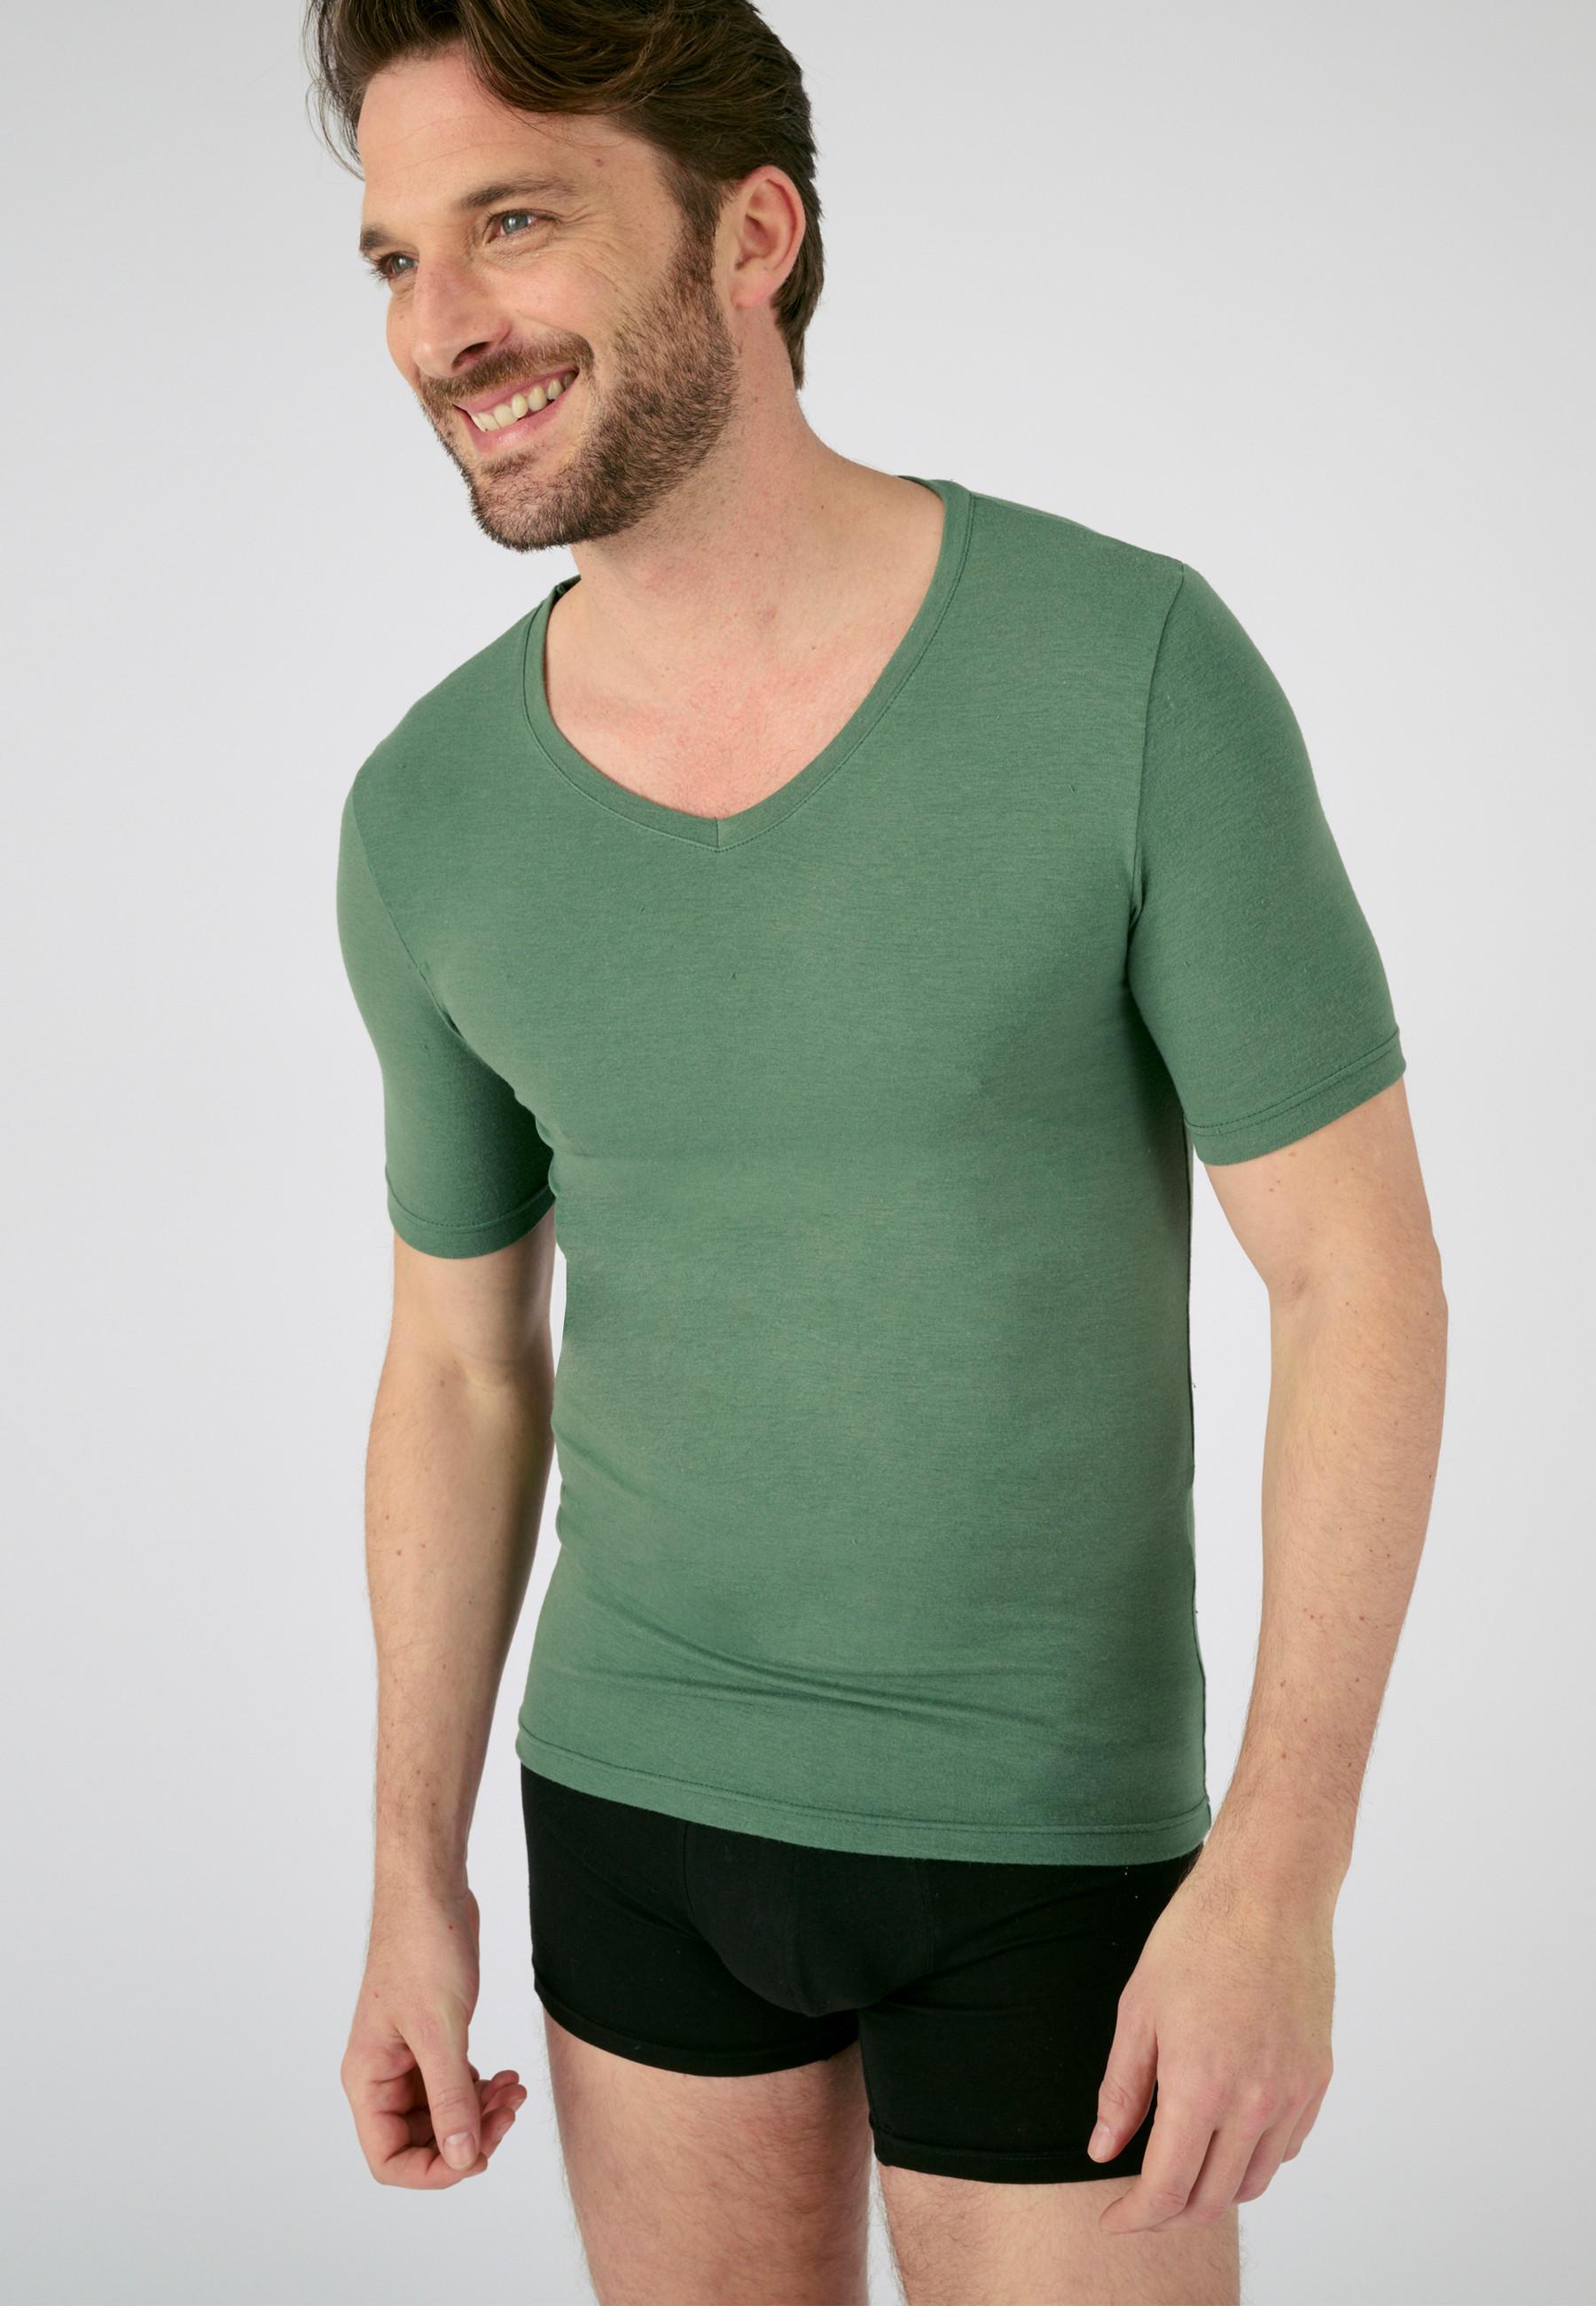 Jersey-t-shirt Aus Thermolactyl Sensitive, Wärmegrad Soft 2. Herren Grün L von Damart